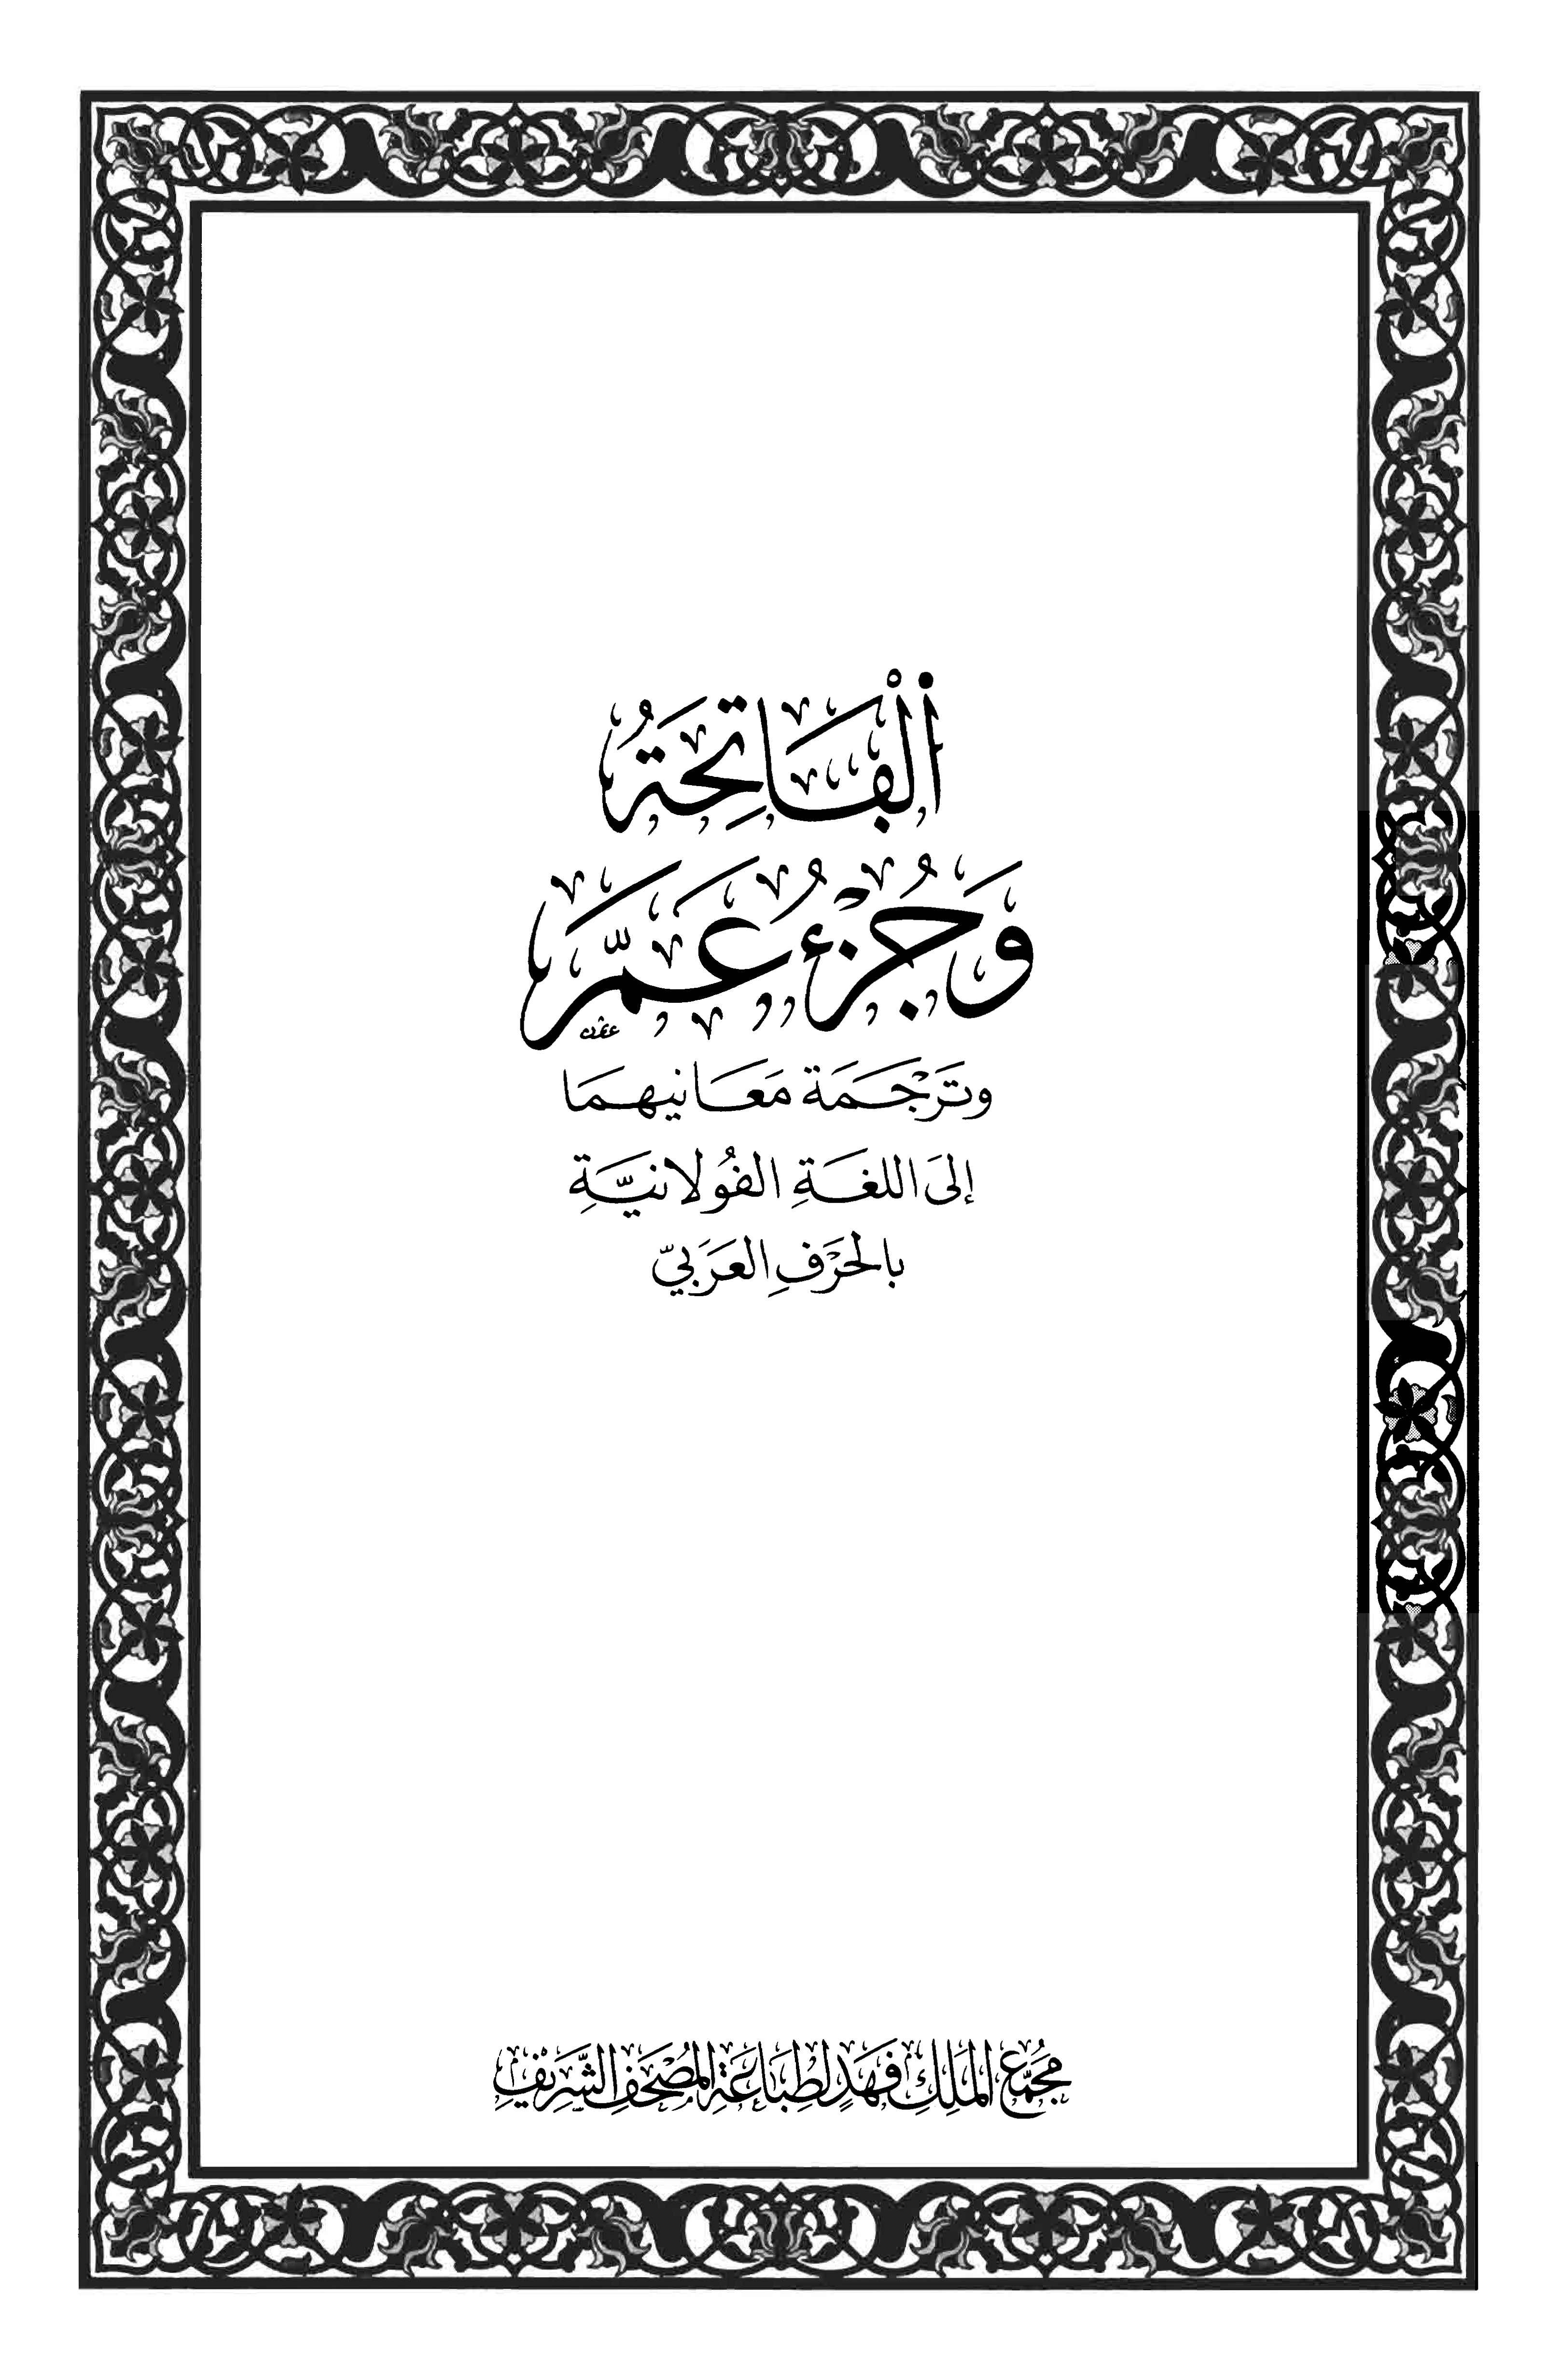 تحميل كتاب الفاتحة وجزء عم وترجمة معانيهما إلى اللغة الفولانية بالحرف العربي